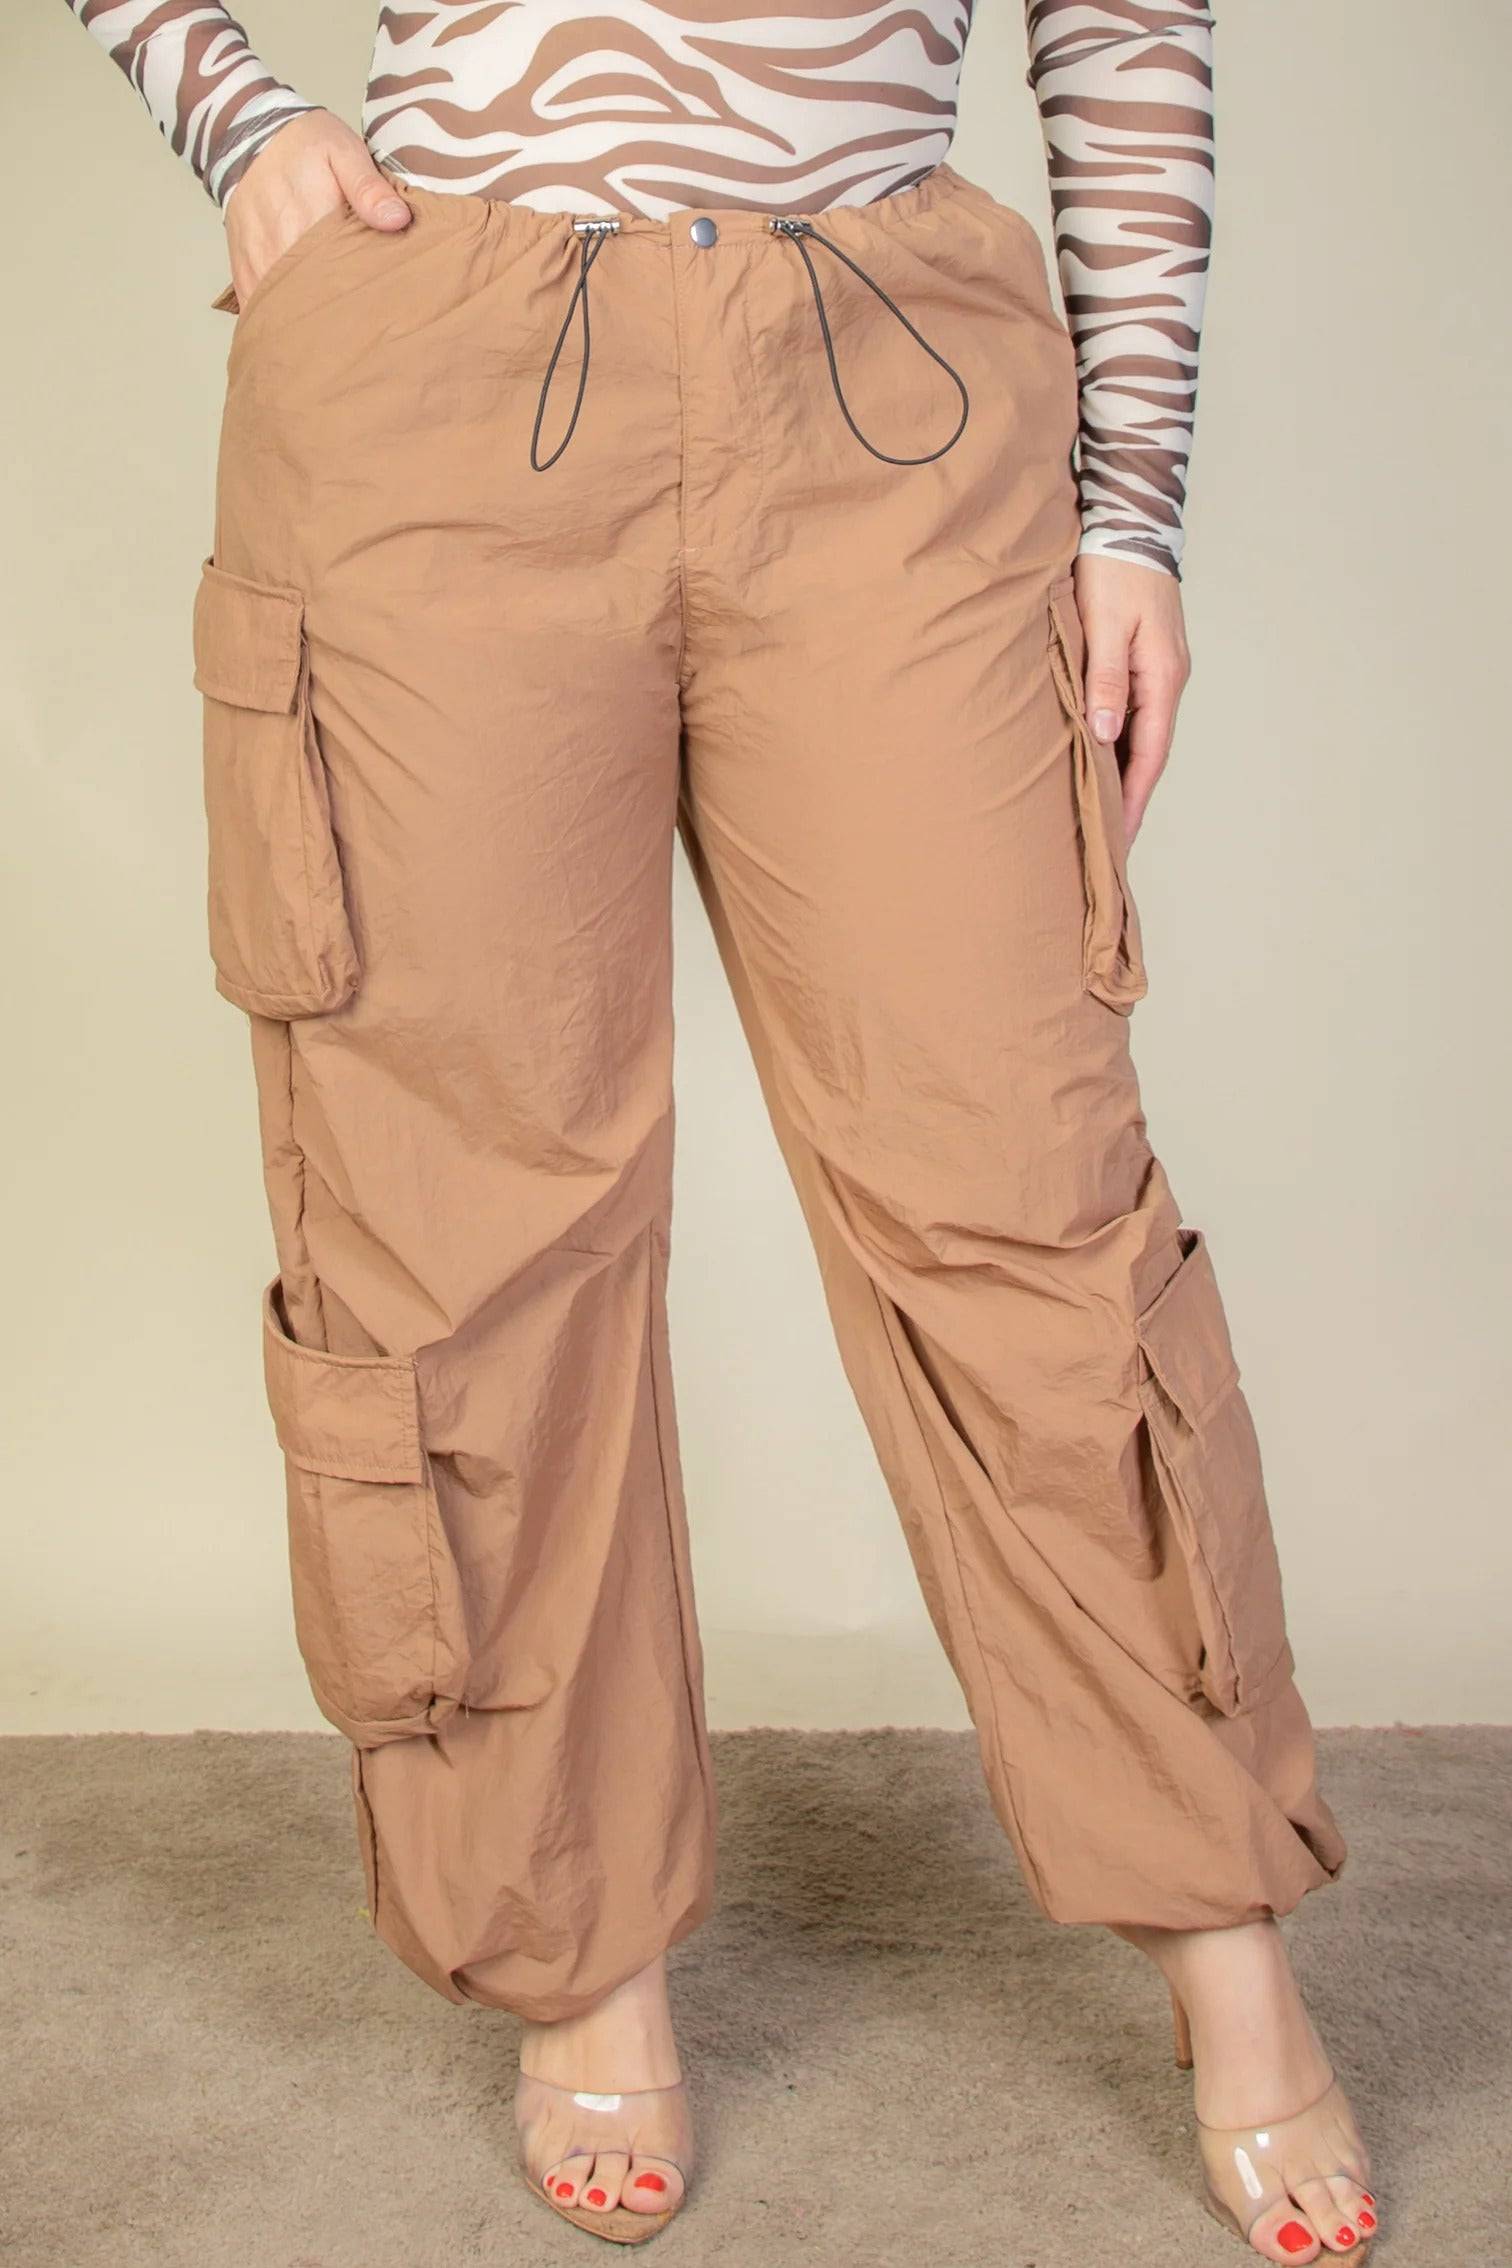 - Voluptuous (+) Plus Size Flap Pockets Drawstring Ruched Parachute Pants - womens pants at TFC&H Co.